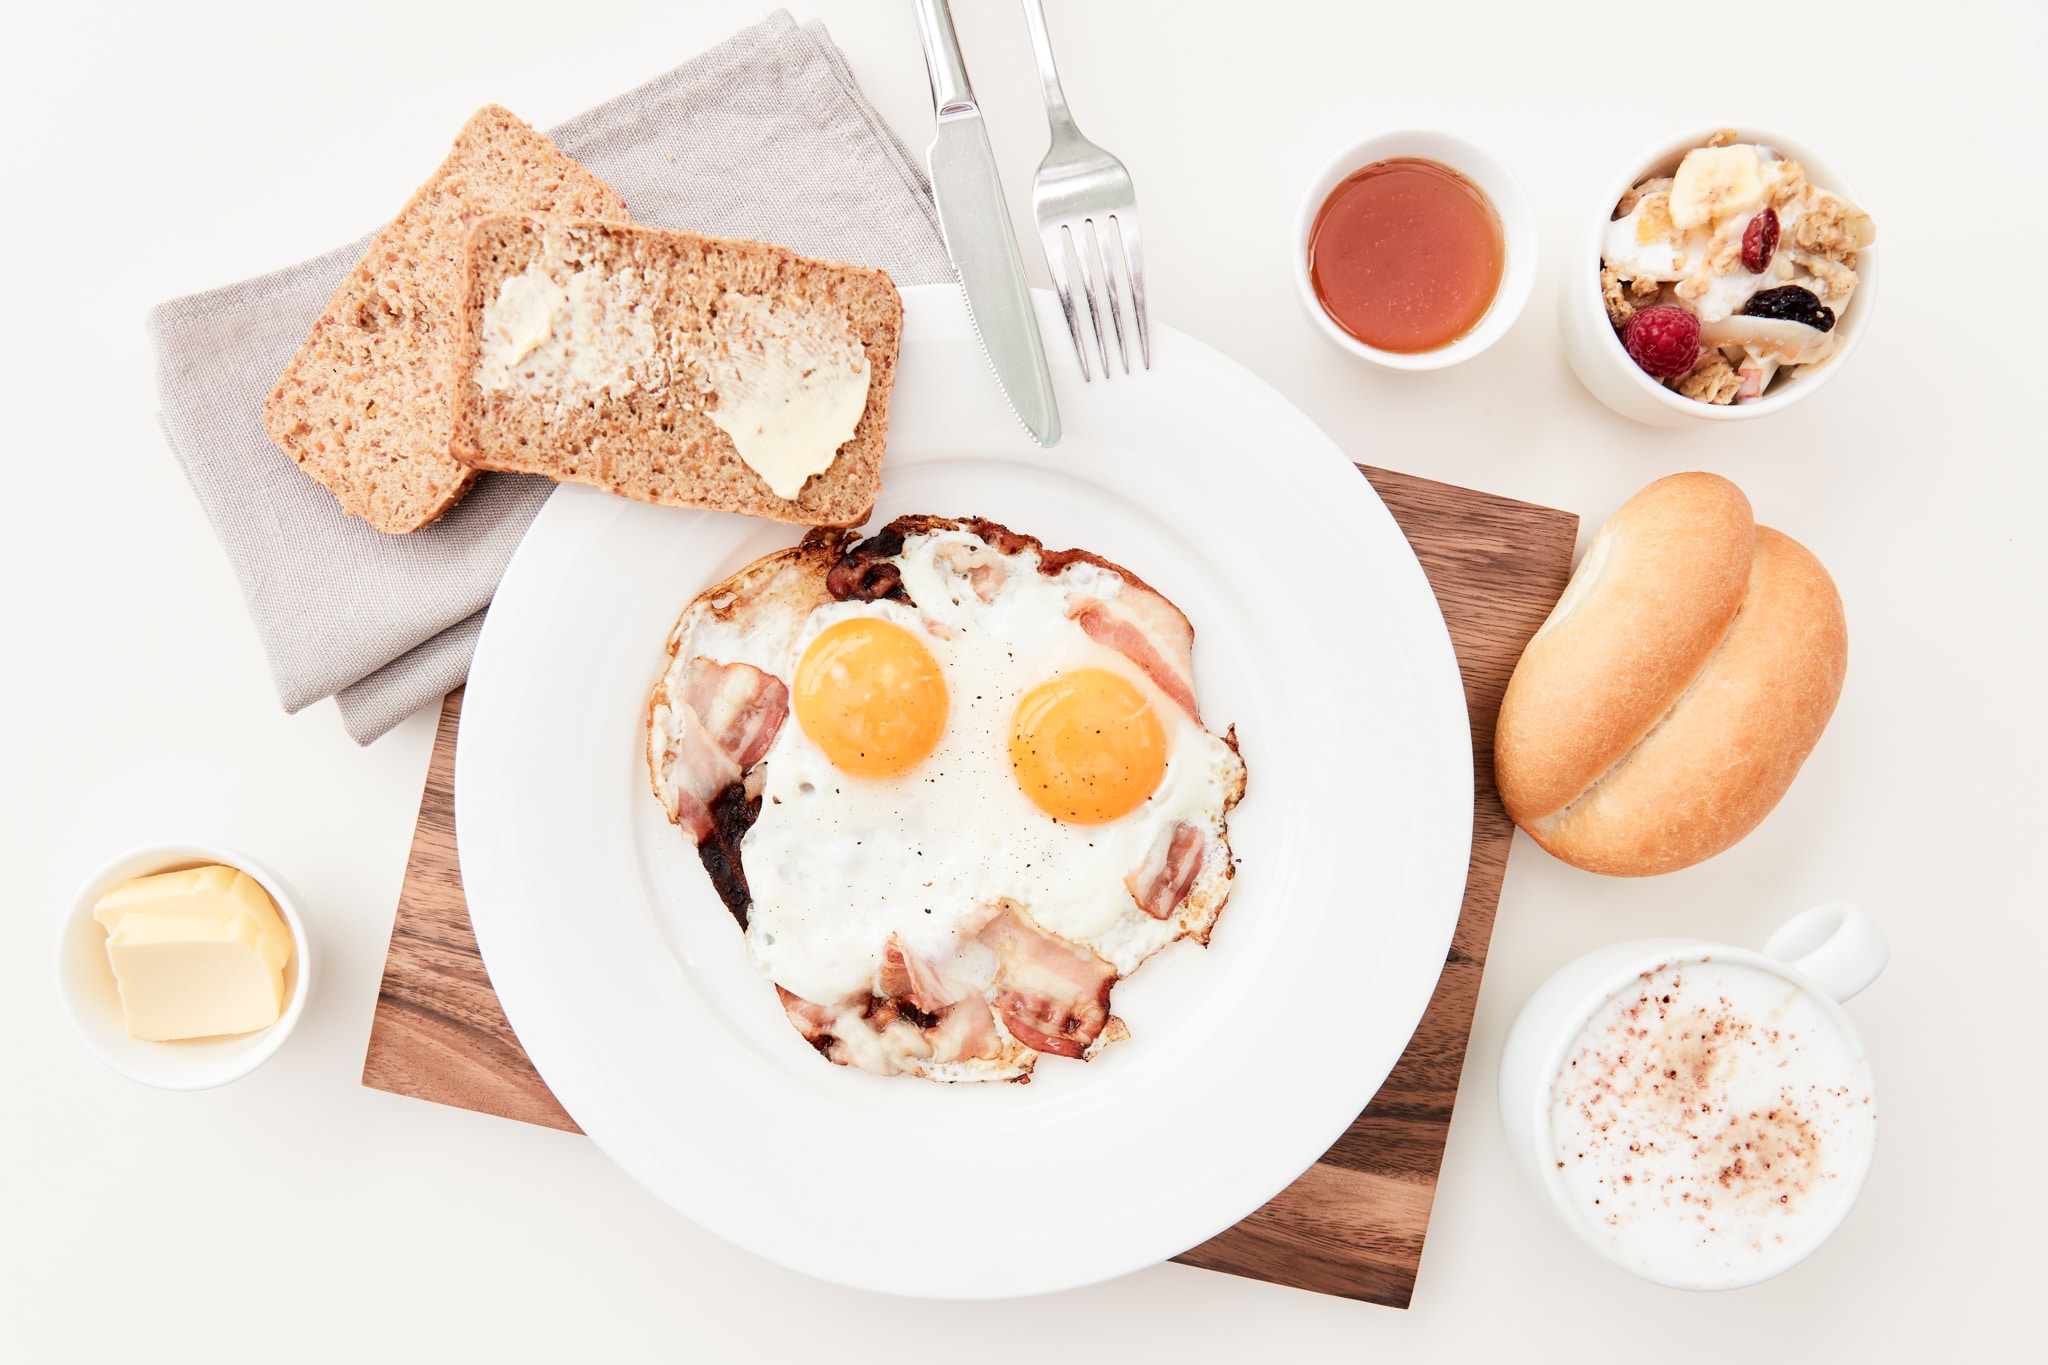 Zu sehen sind Bestandteile eines Frühstücks: ein Teller mit Speck und Spiegelei, daneben Butter, Brot, Kakao, eine Semmel, Marmelade und ein Müsli.